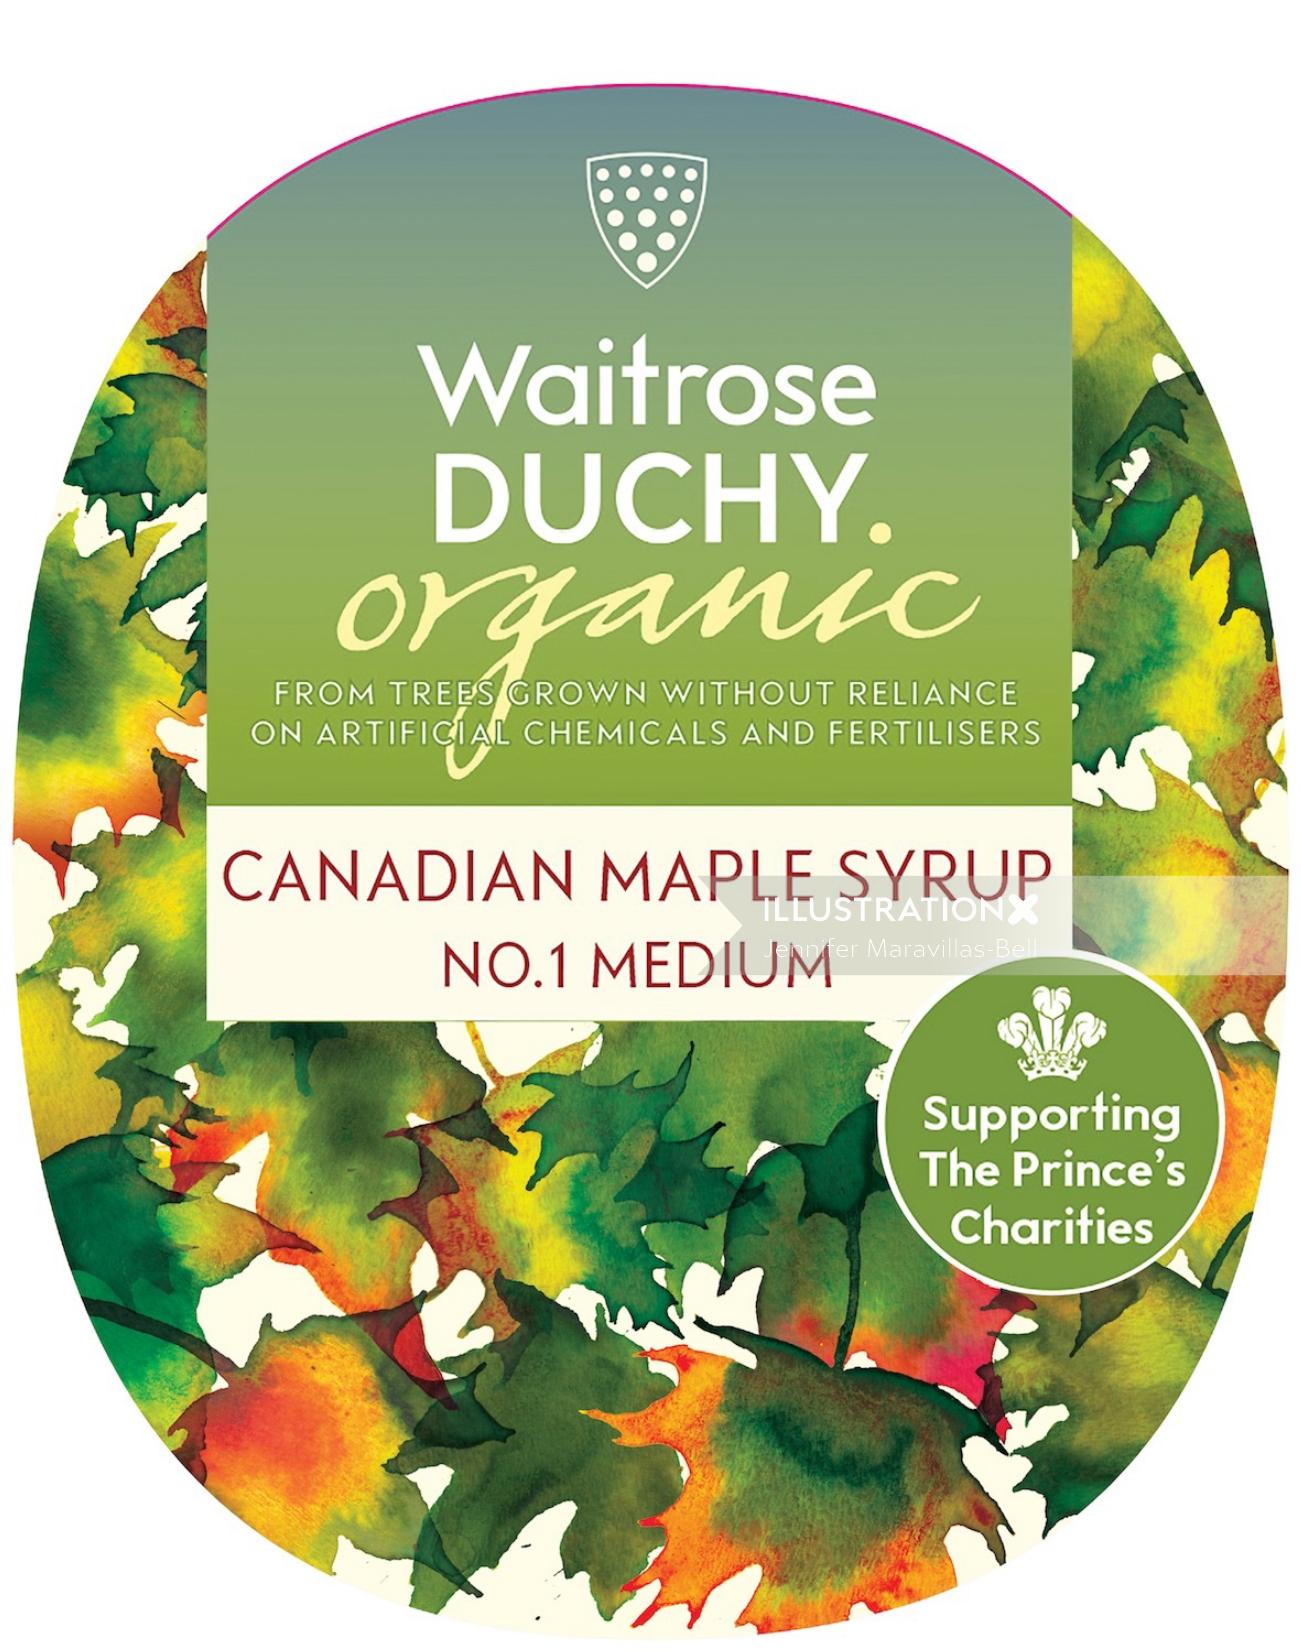 Una ilustración para el jarabe de arce canadiense Waitrose Duchy